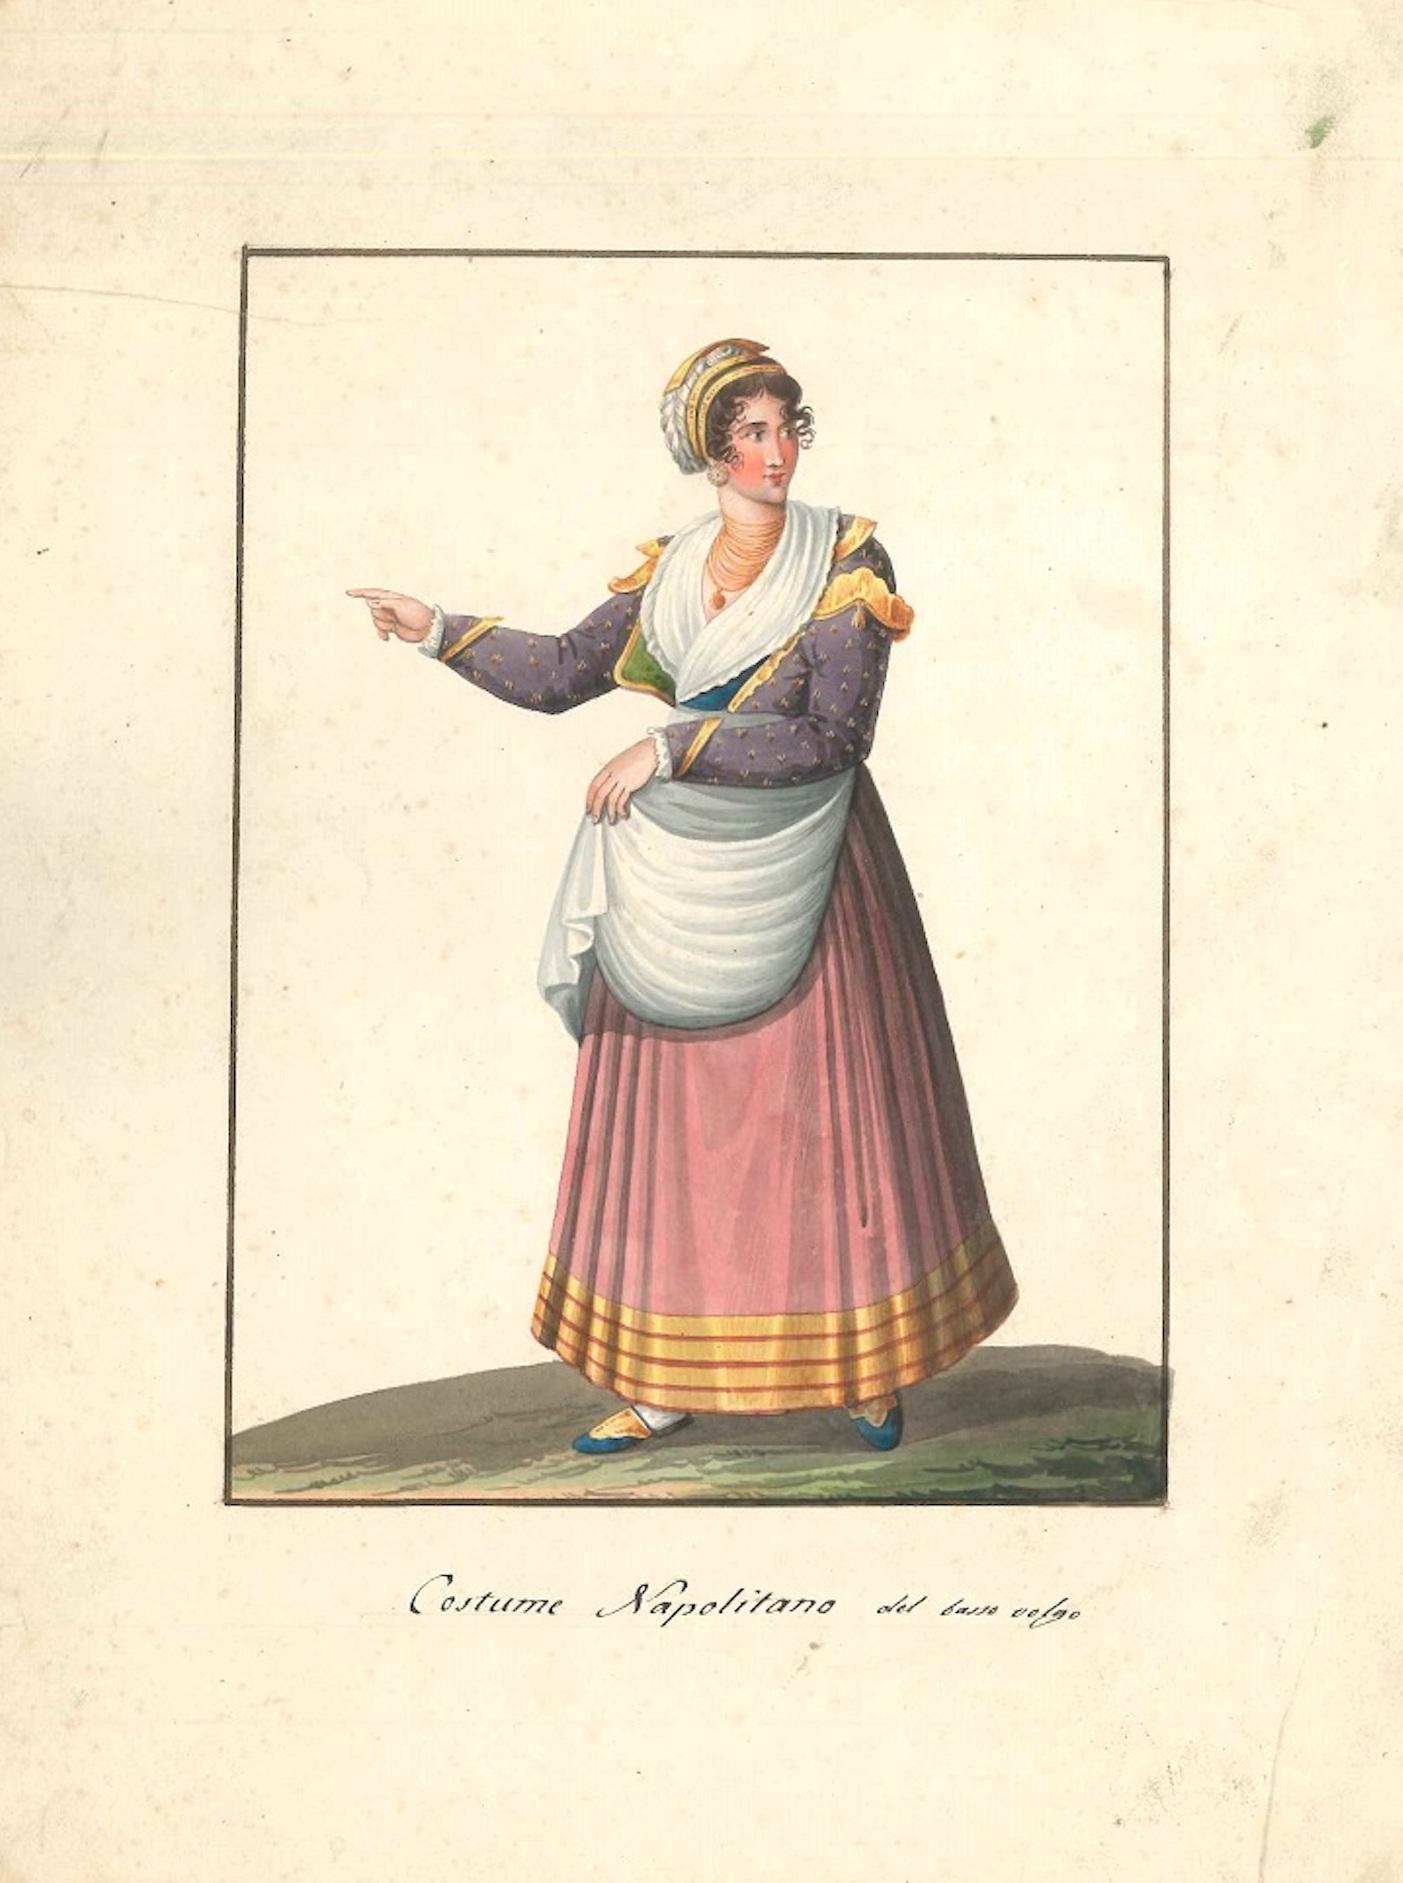 Costume Napolitano del basso volgo  - Watercolor by M. De Vito - 1820 ca. - Art by Michela De Vito